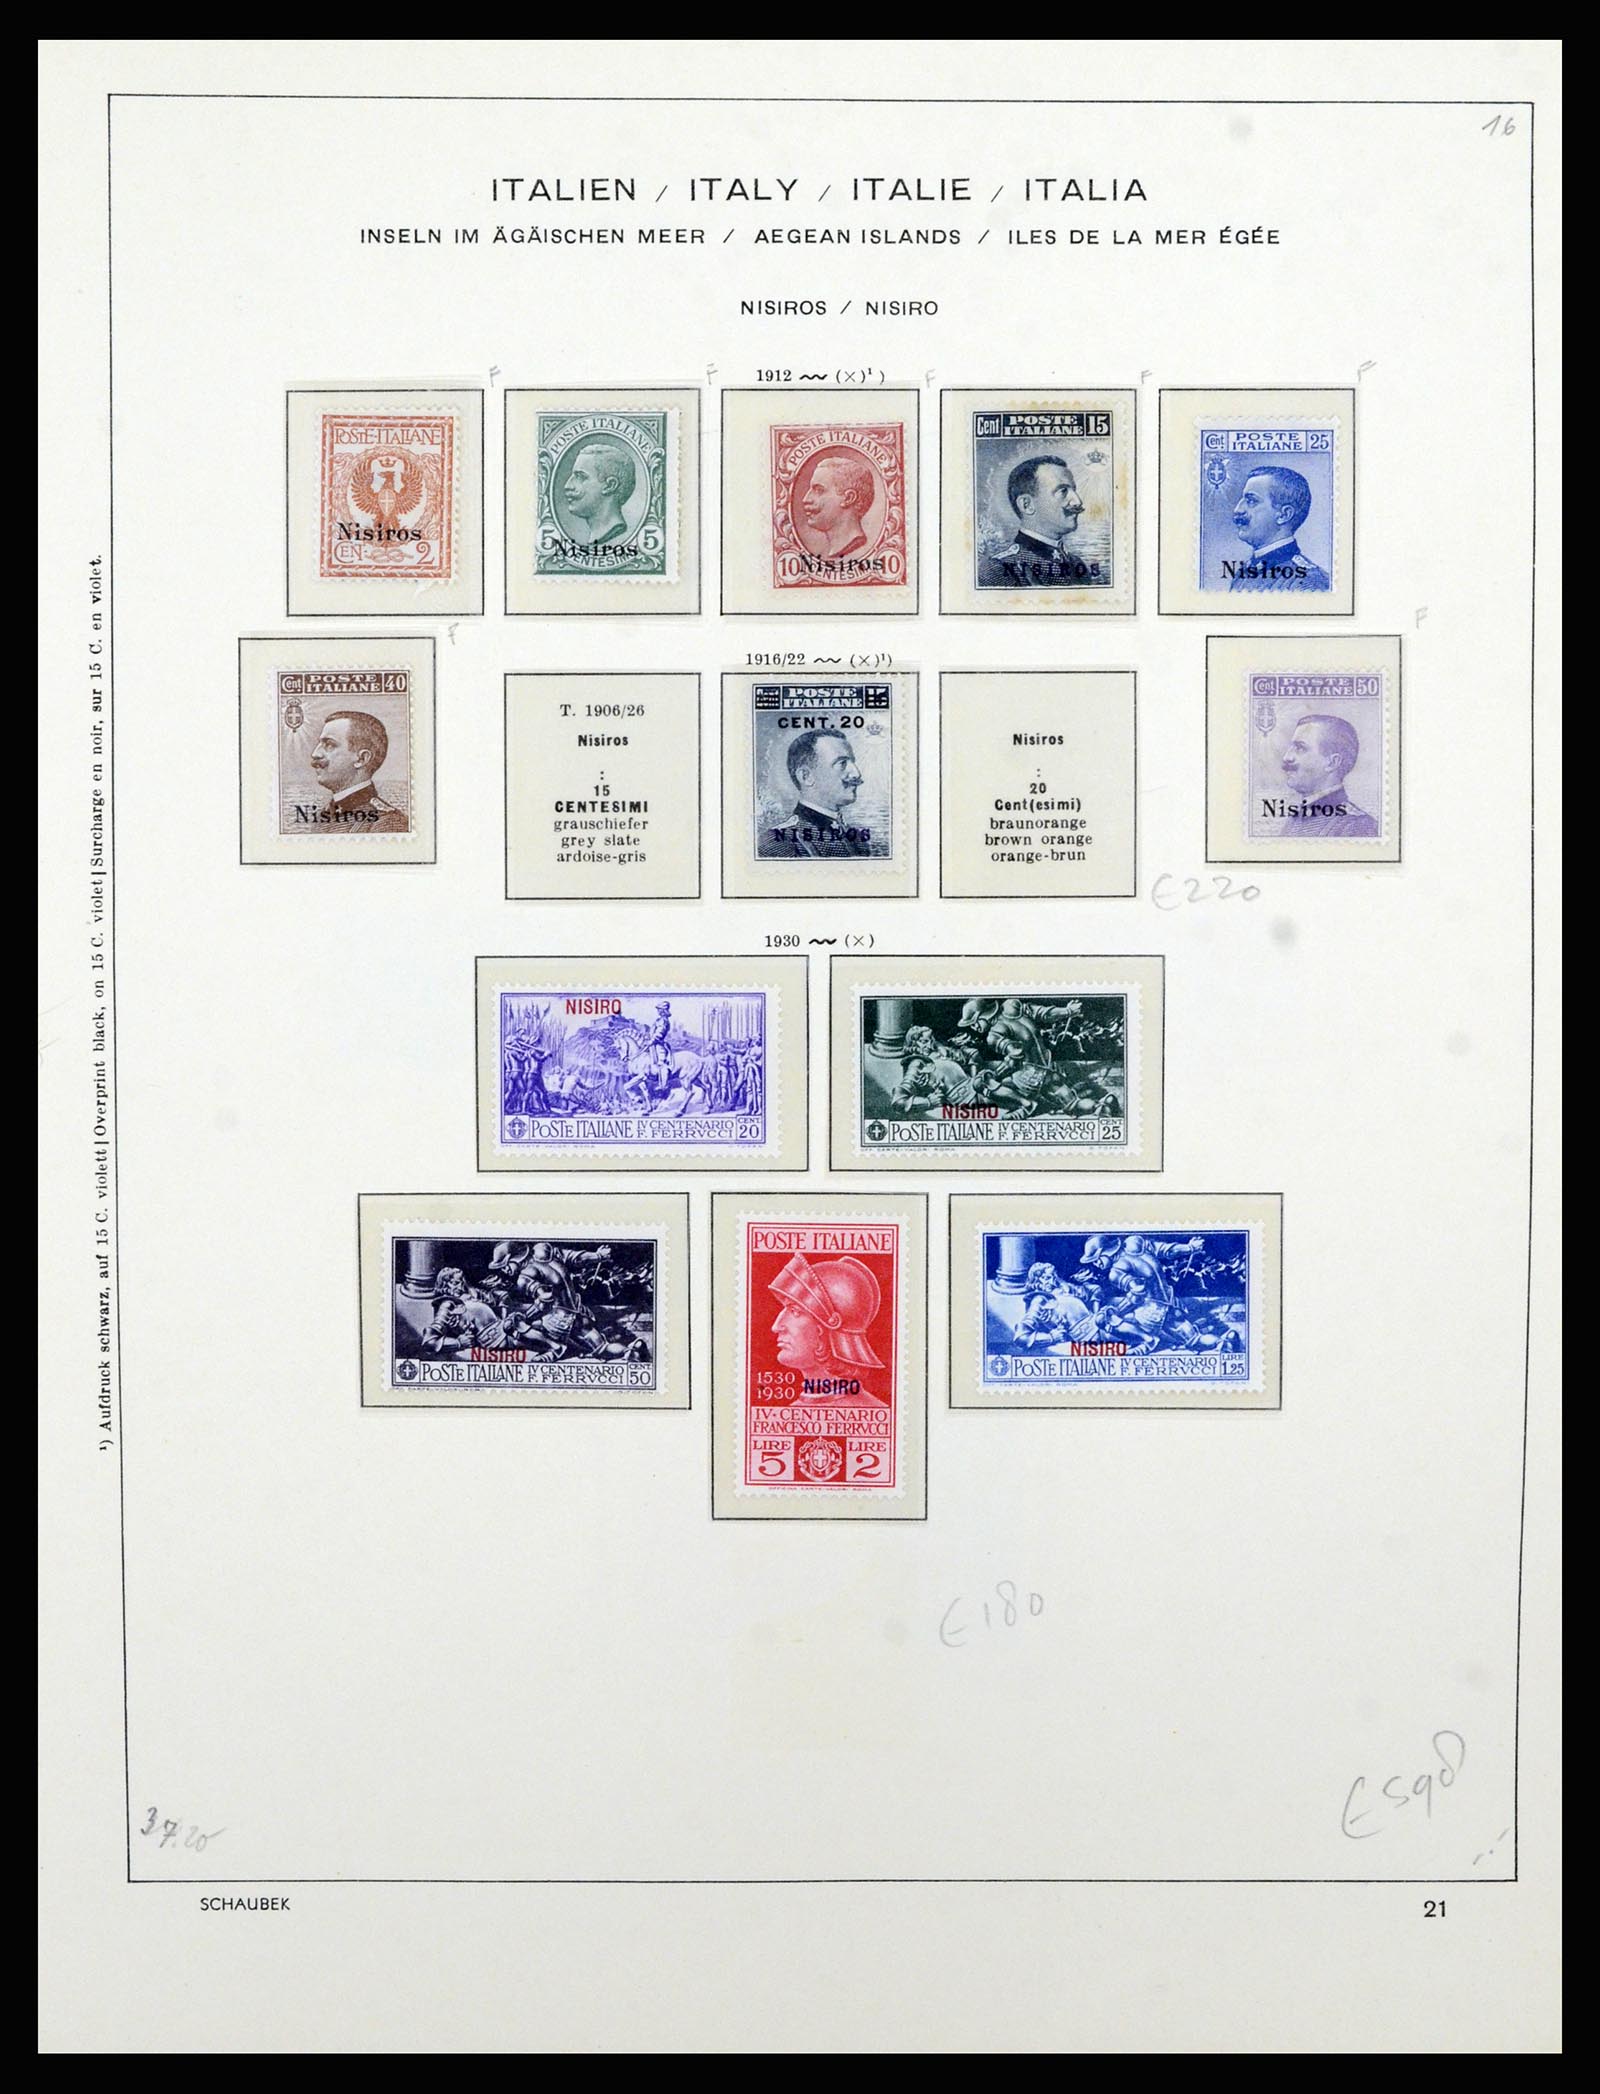 36577 047 - Stamp collection 36577 Italiaanse gebieden 1870-1940.